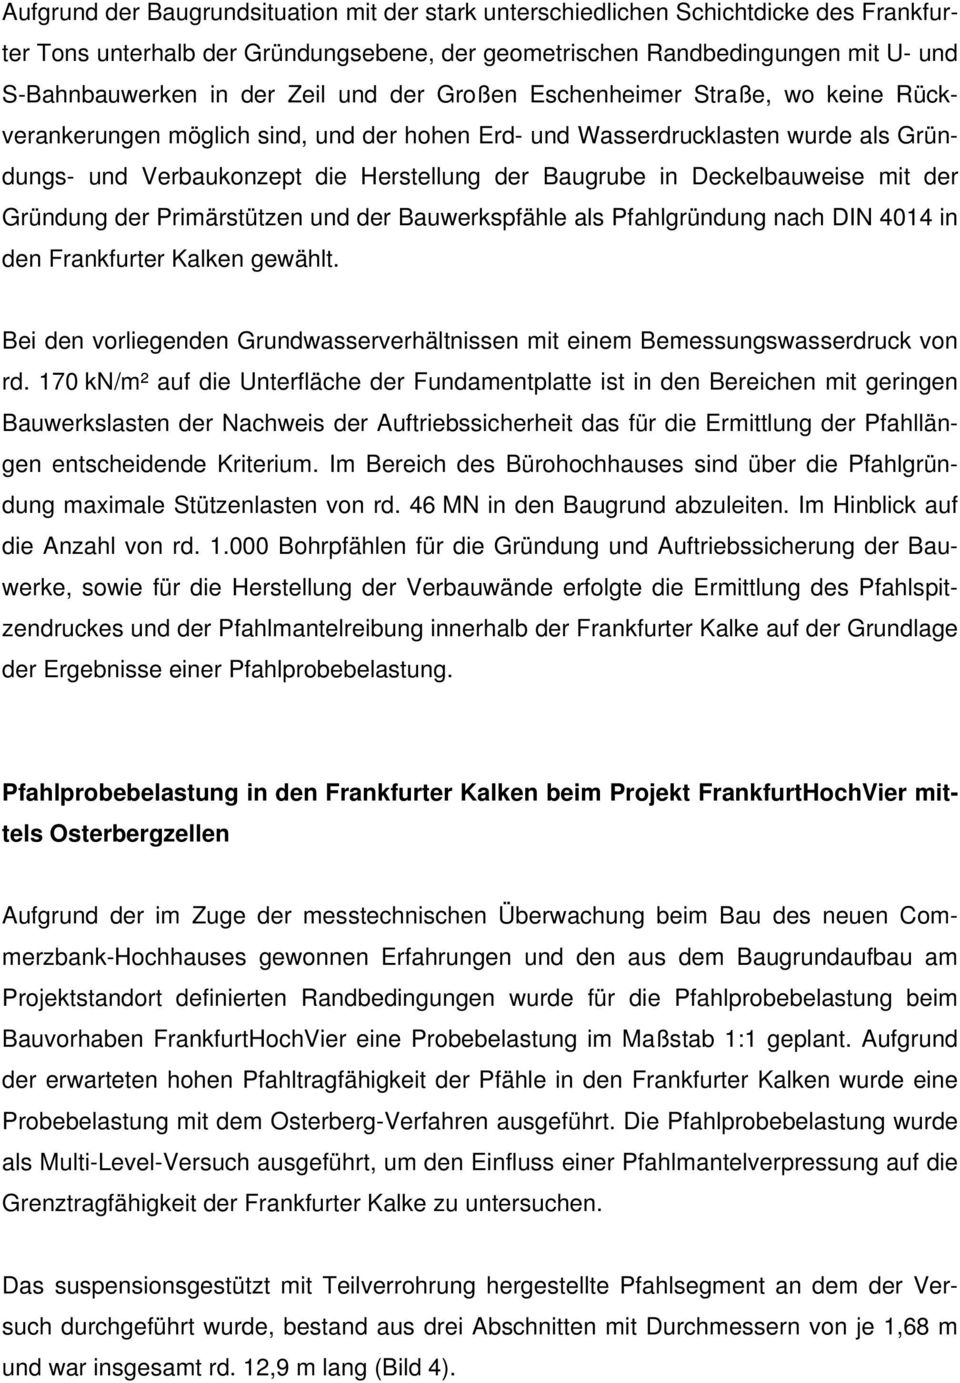 Deckelbauweise mit der Gründung der Primärstützen und der Bauwerkspfähle als Pfahlgründung nach DIN 4014 in den Frankfurter Kalken gewählt.